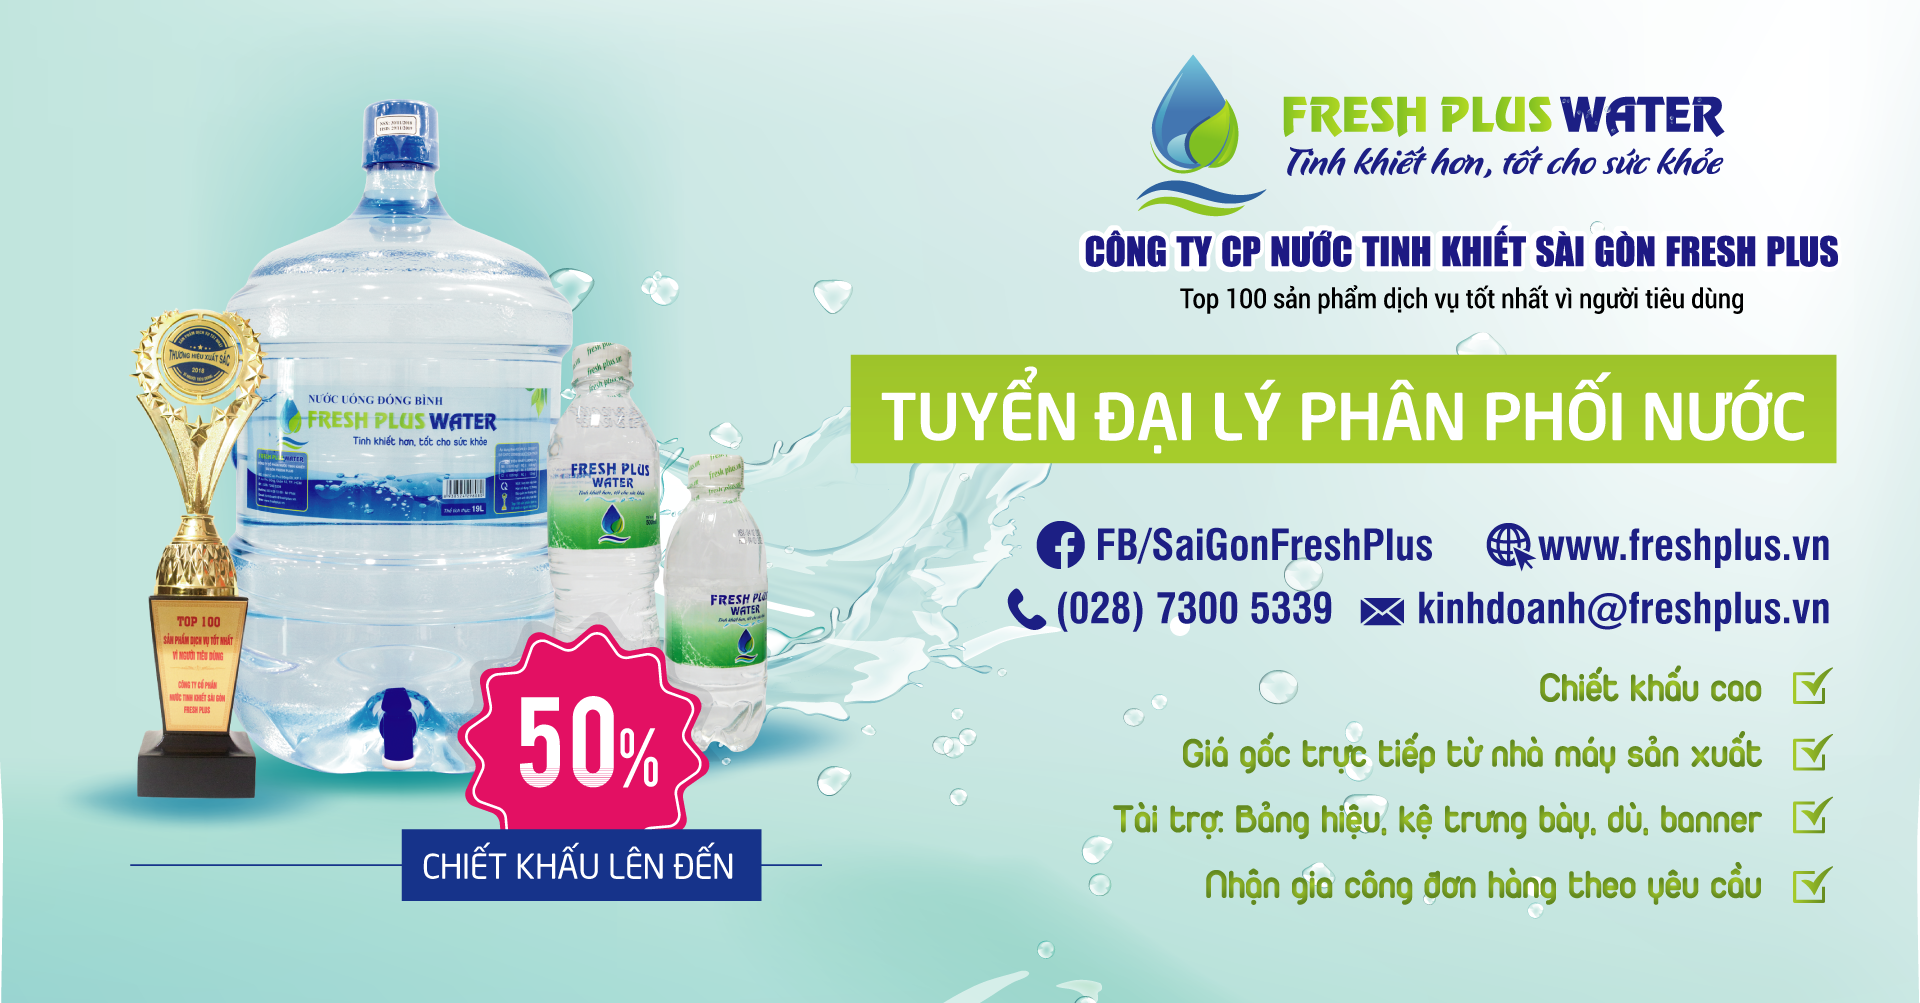 Sài Gòn Fresh Plus tuyển đại lý phân phối nước tinh khiết chiết khấu cao.